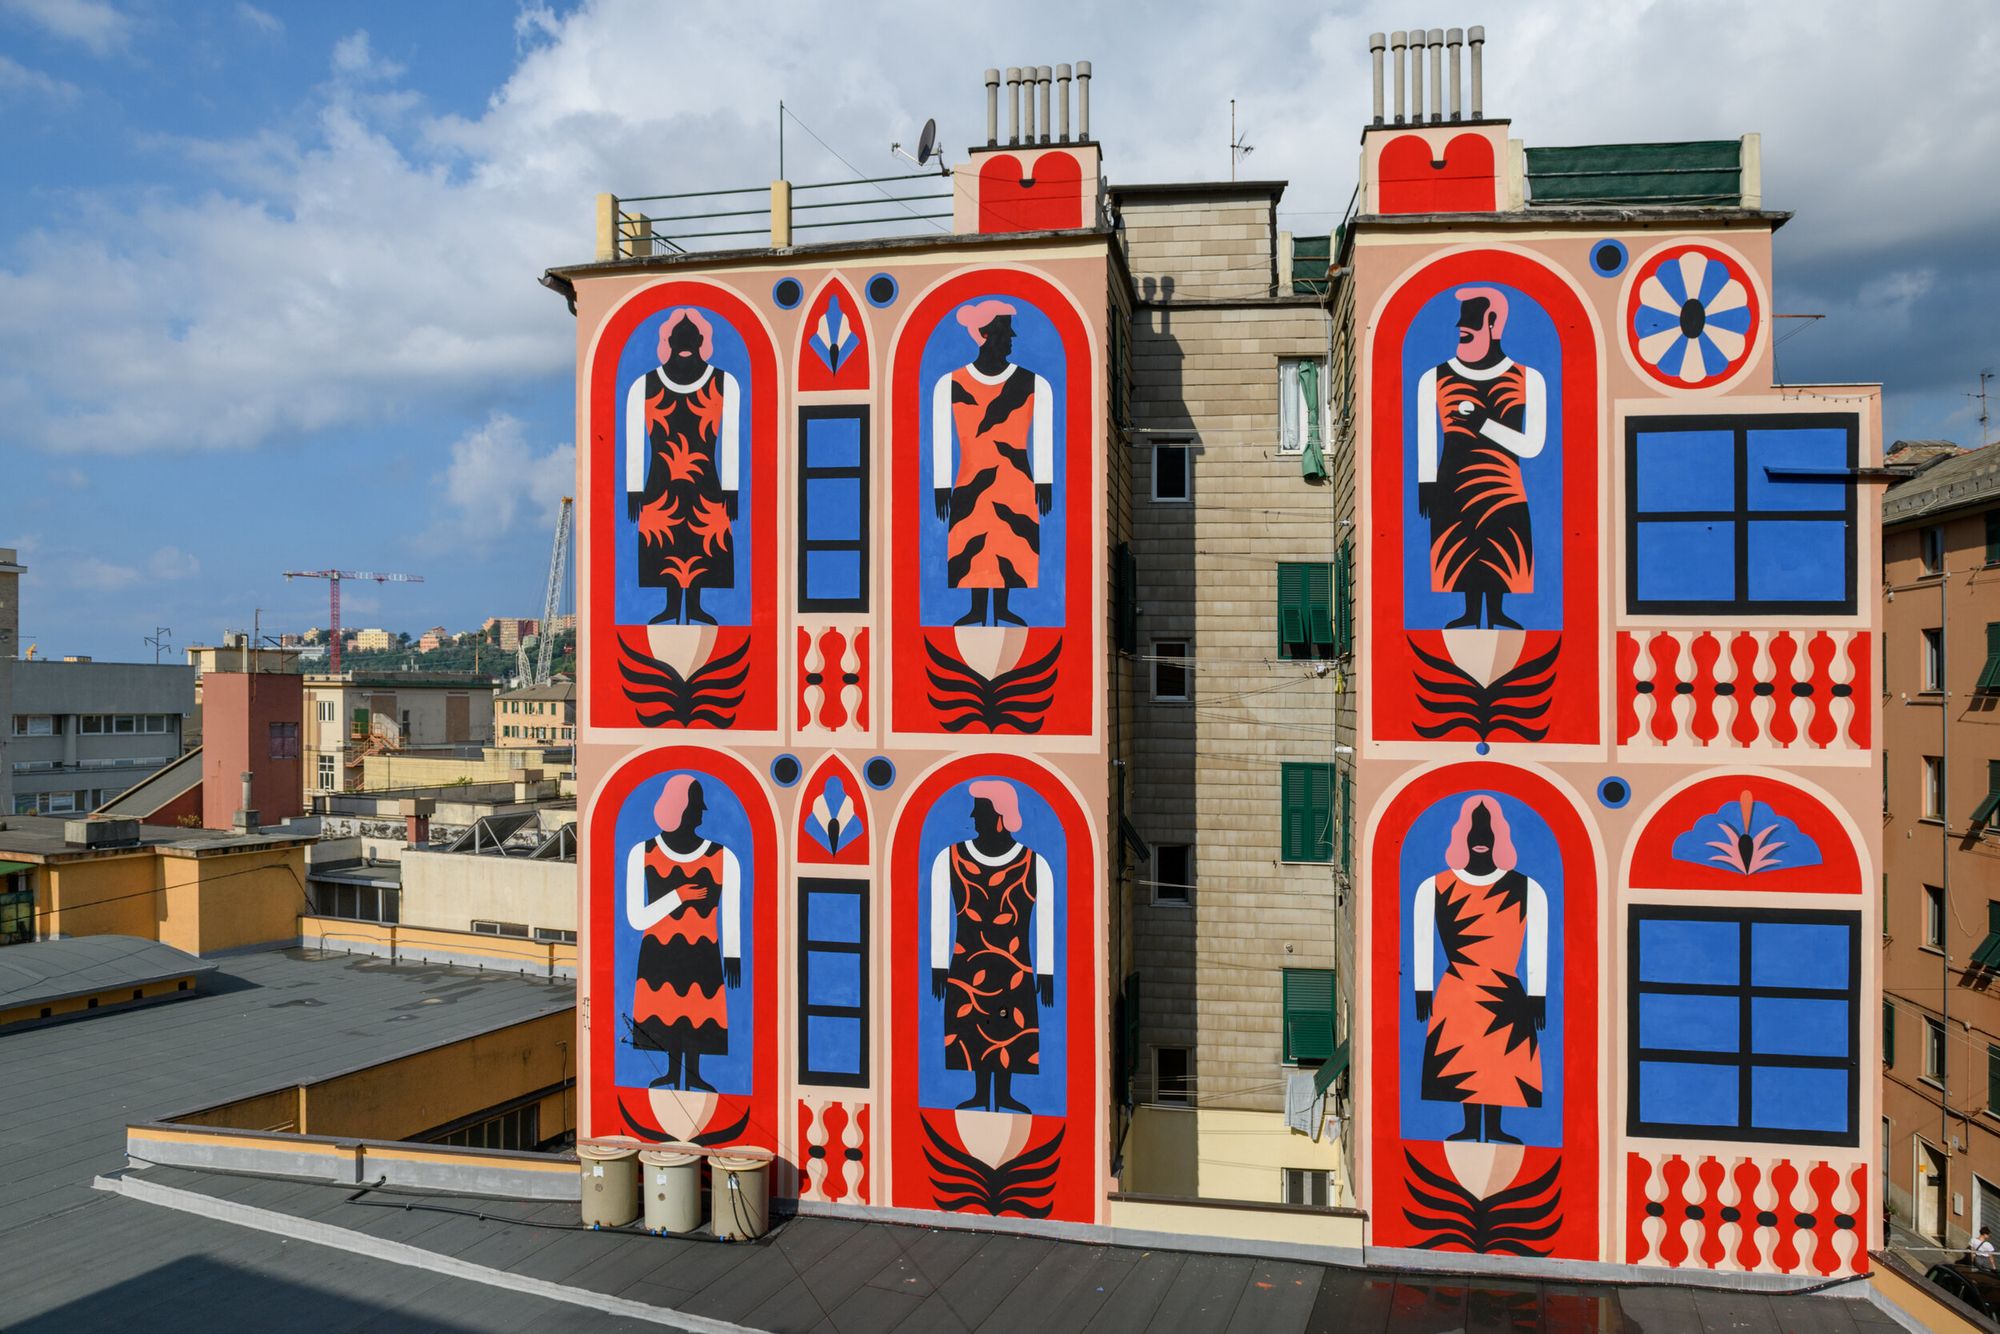 Ezekkel a falfestményekkel teszi színesebbé Európa városait Agostino Iacurci